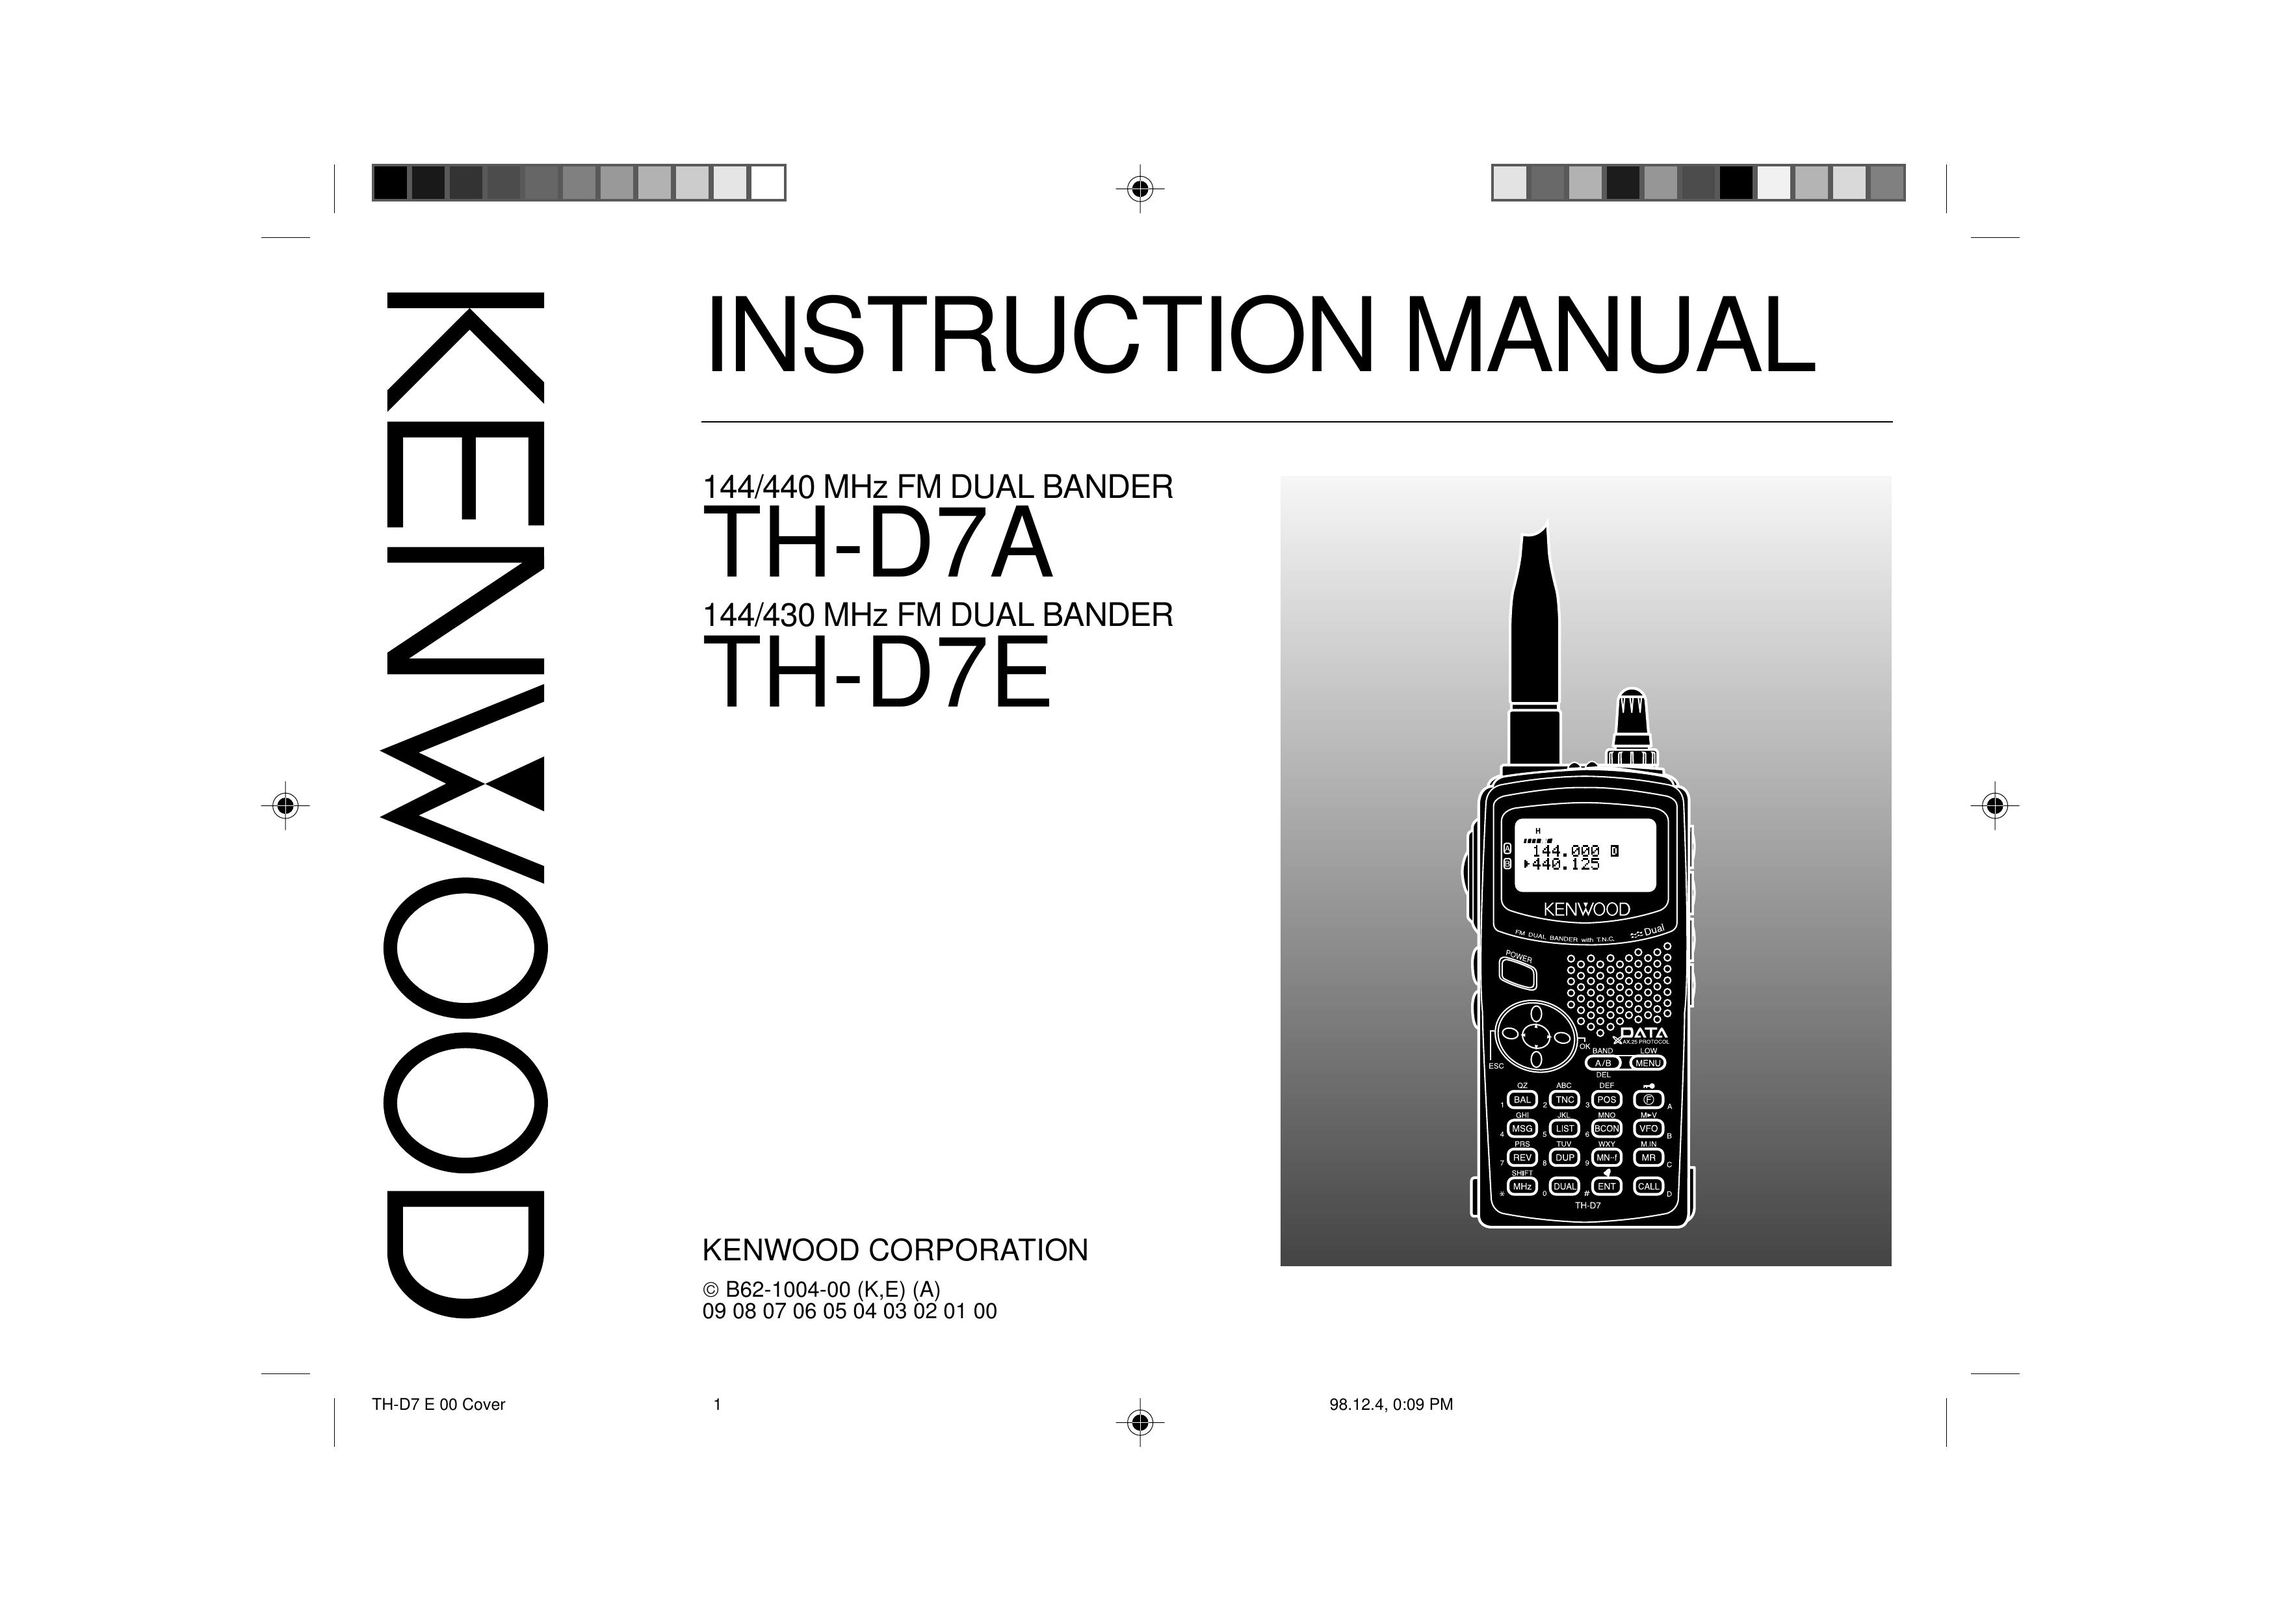 Kenwood 440 MHz TH-D7A Satellite Radio User Manual